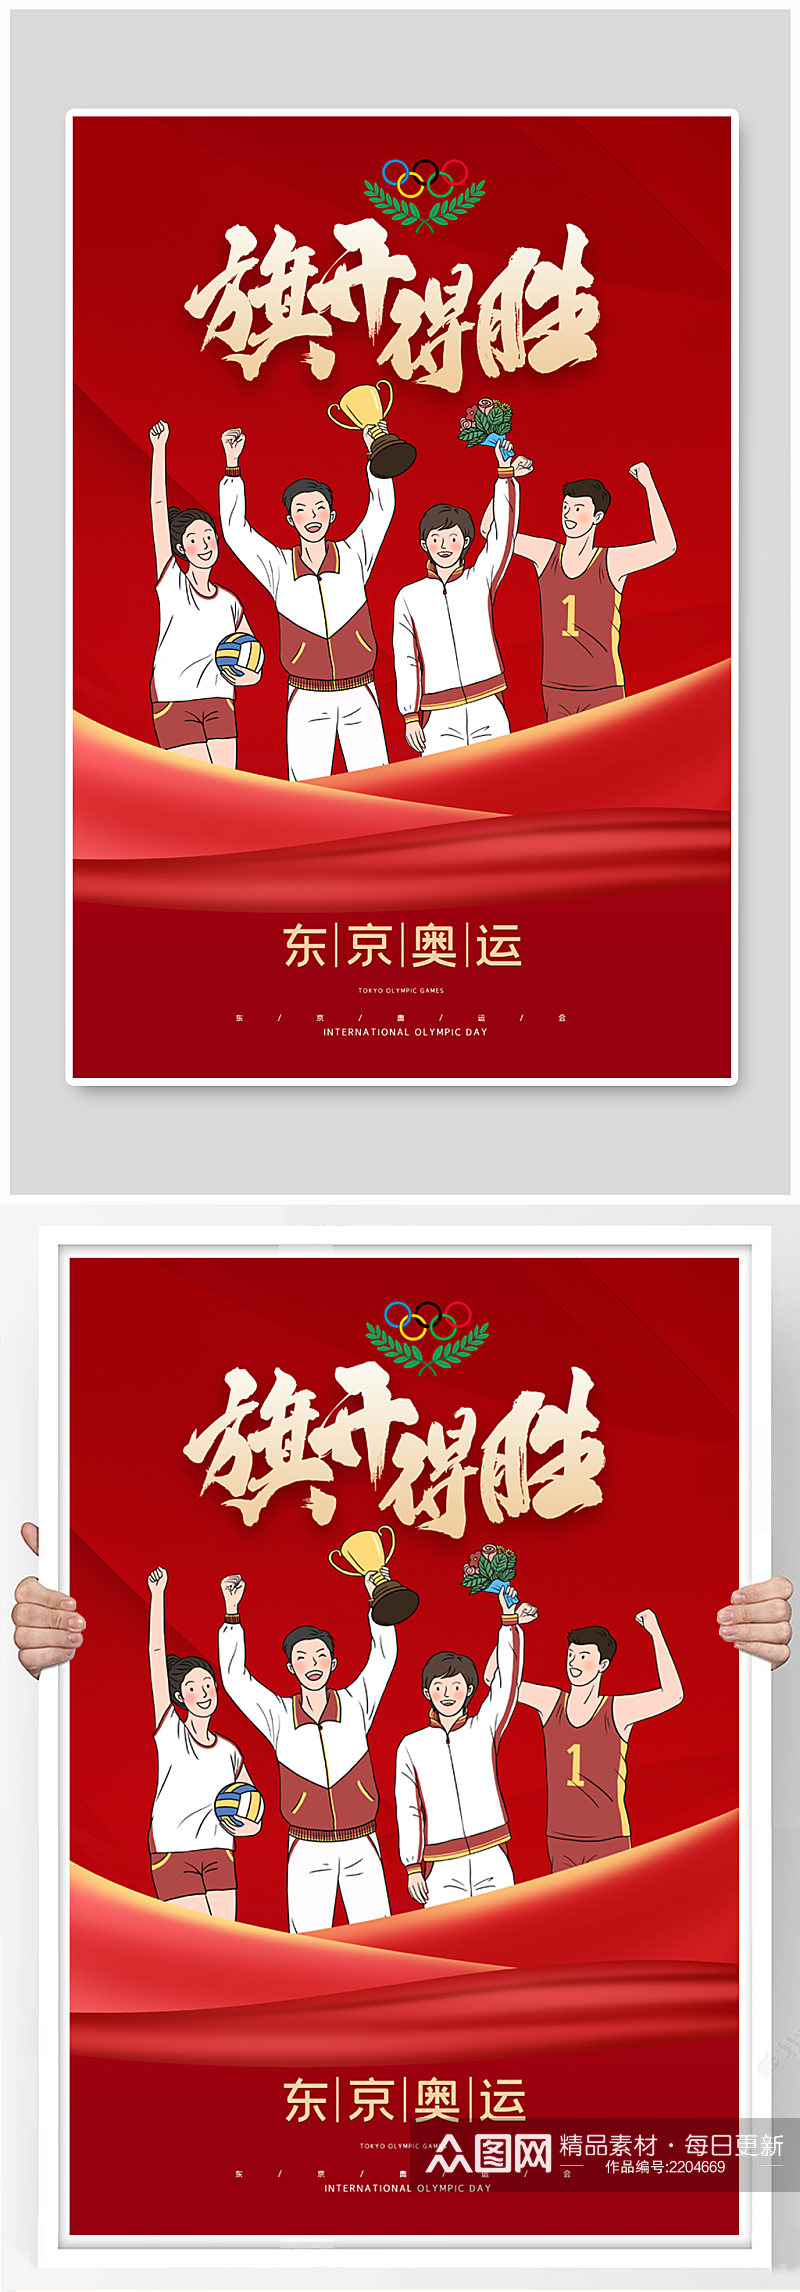 红色大气京东奥运会中国加油海报素材